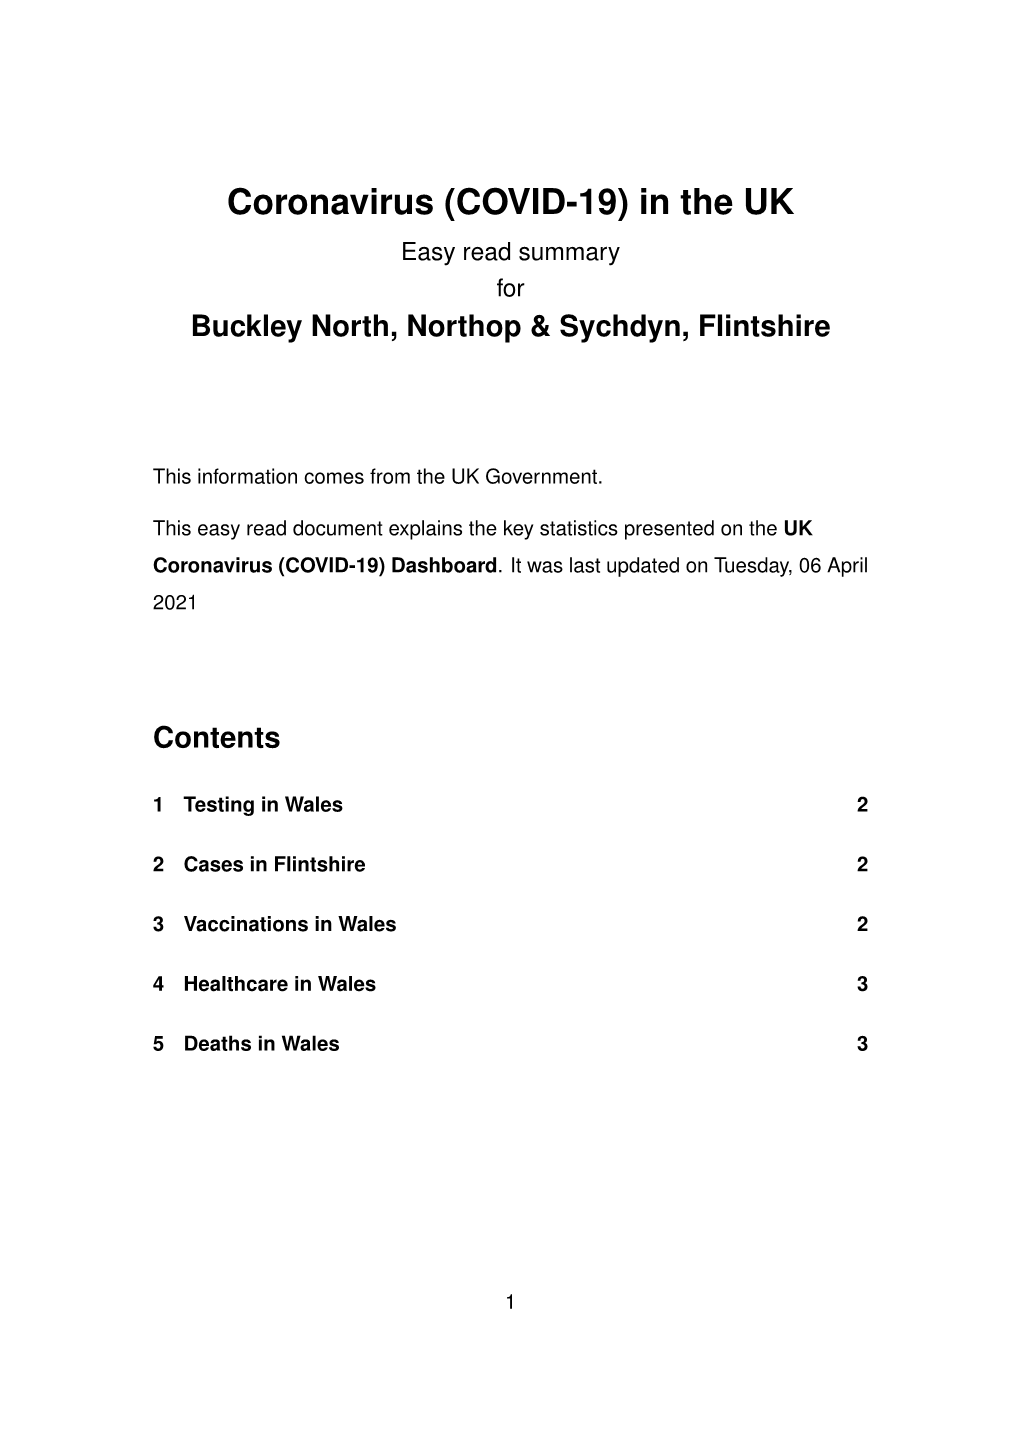 Buckley North, Northop & Sychdyn, Flintshire